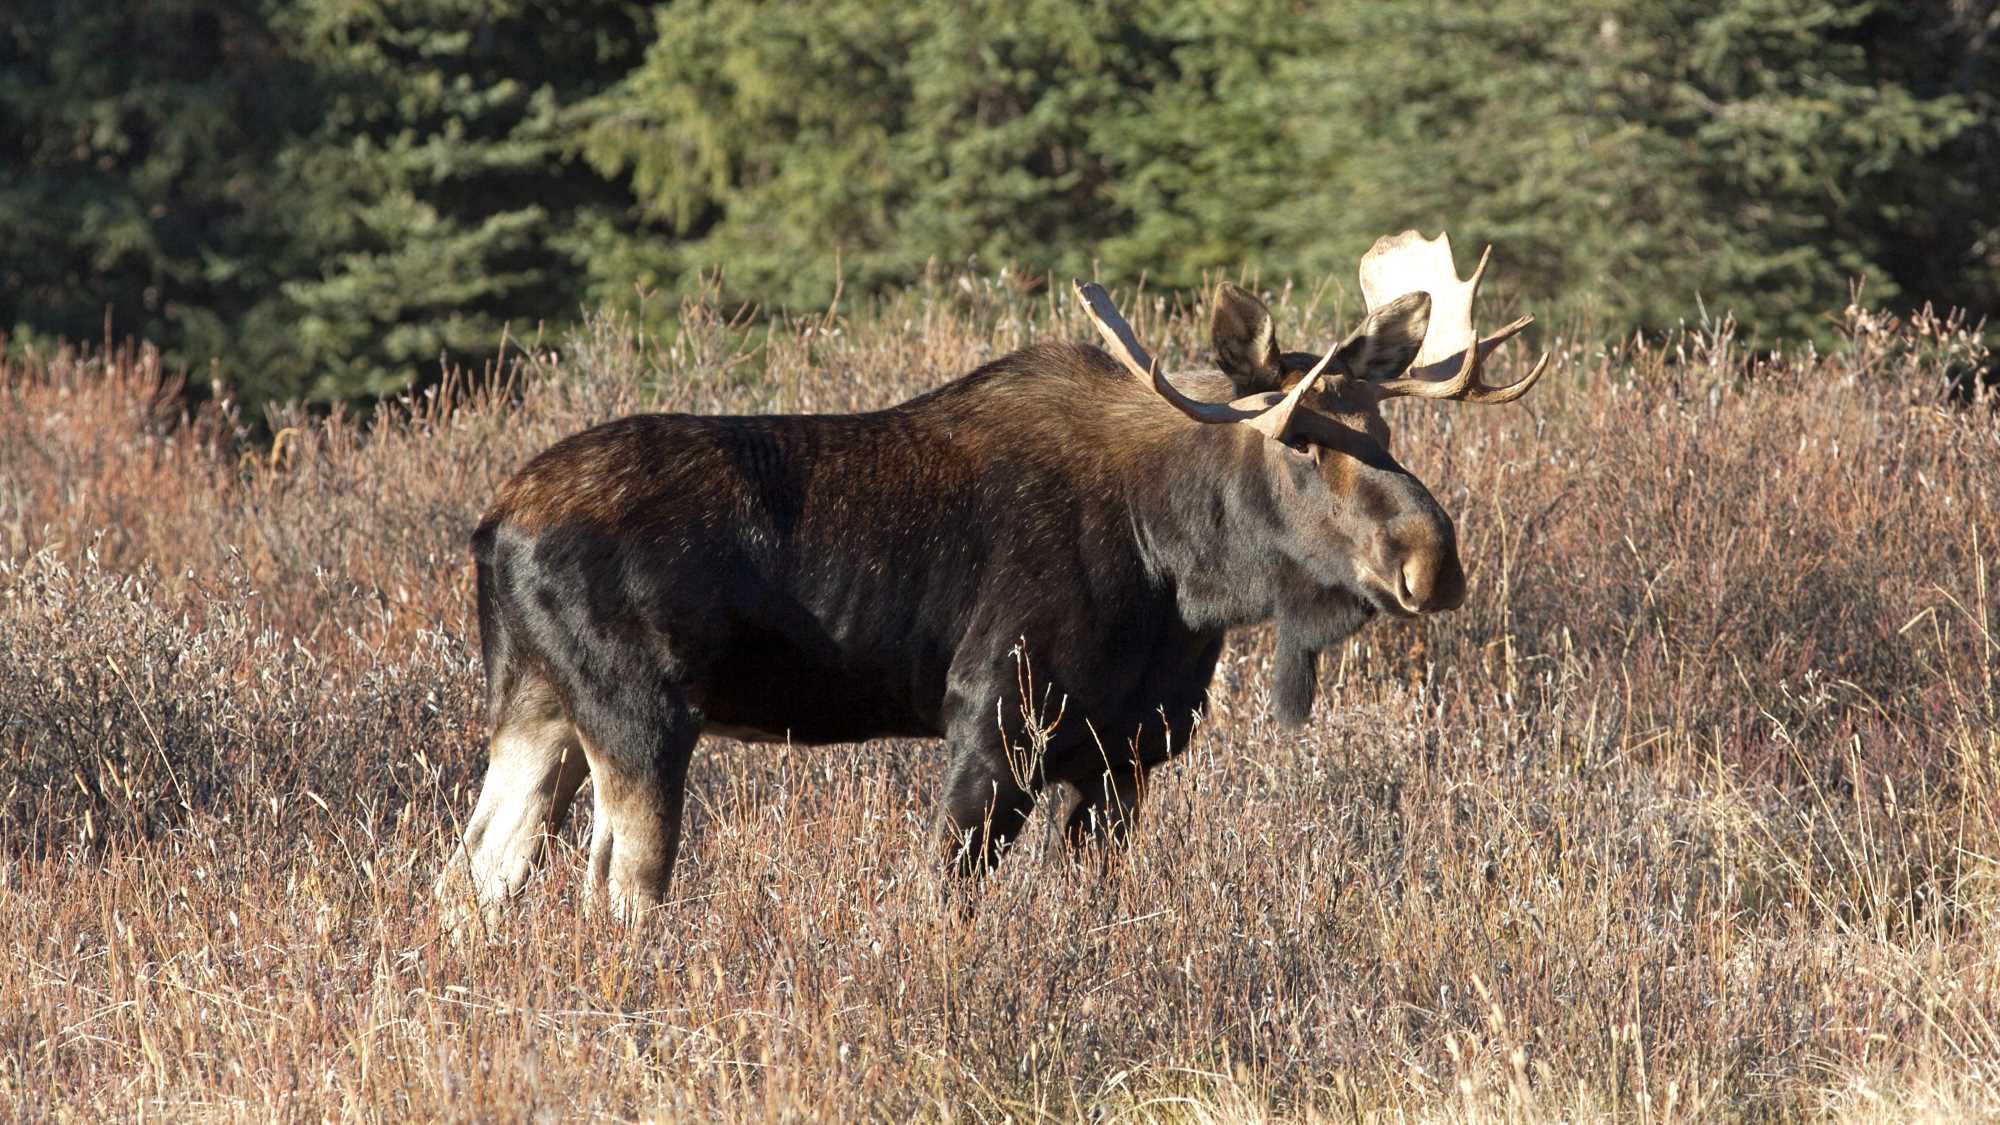 A moose in a field